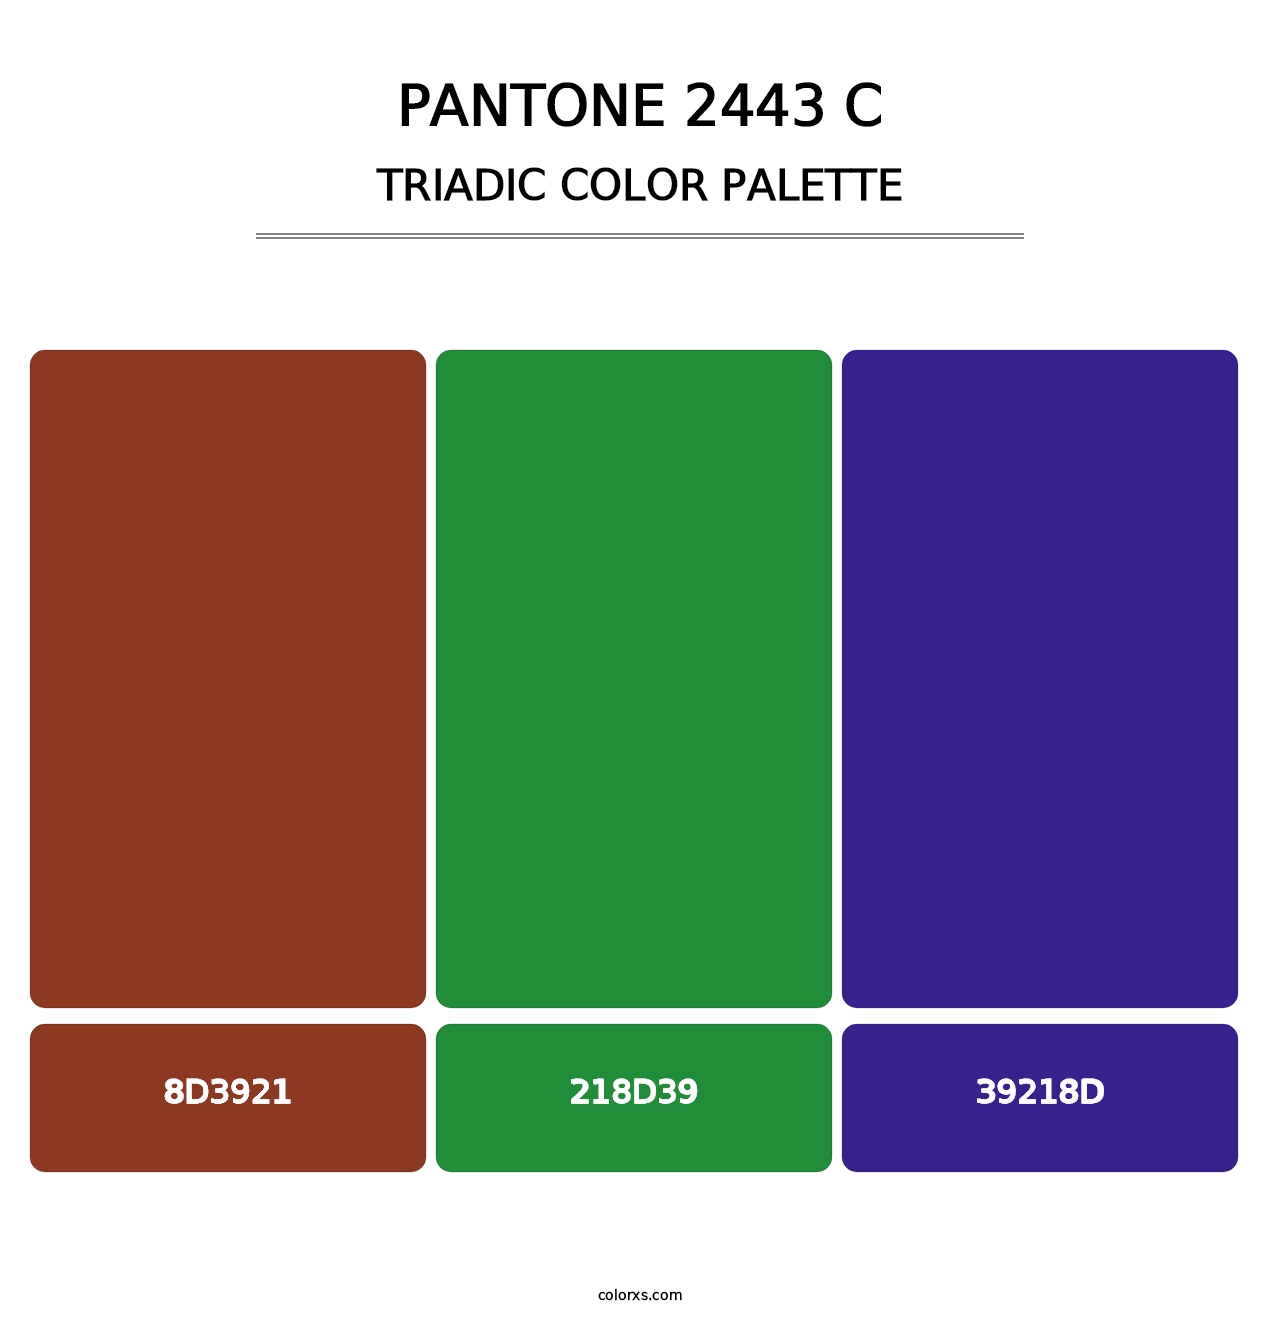 PANTONE 2443 C - Triadic Color Palette